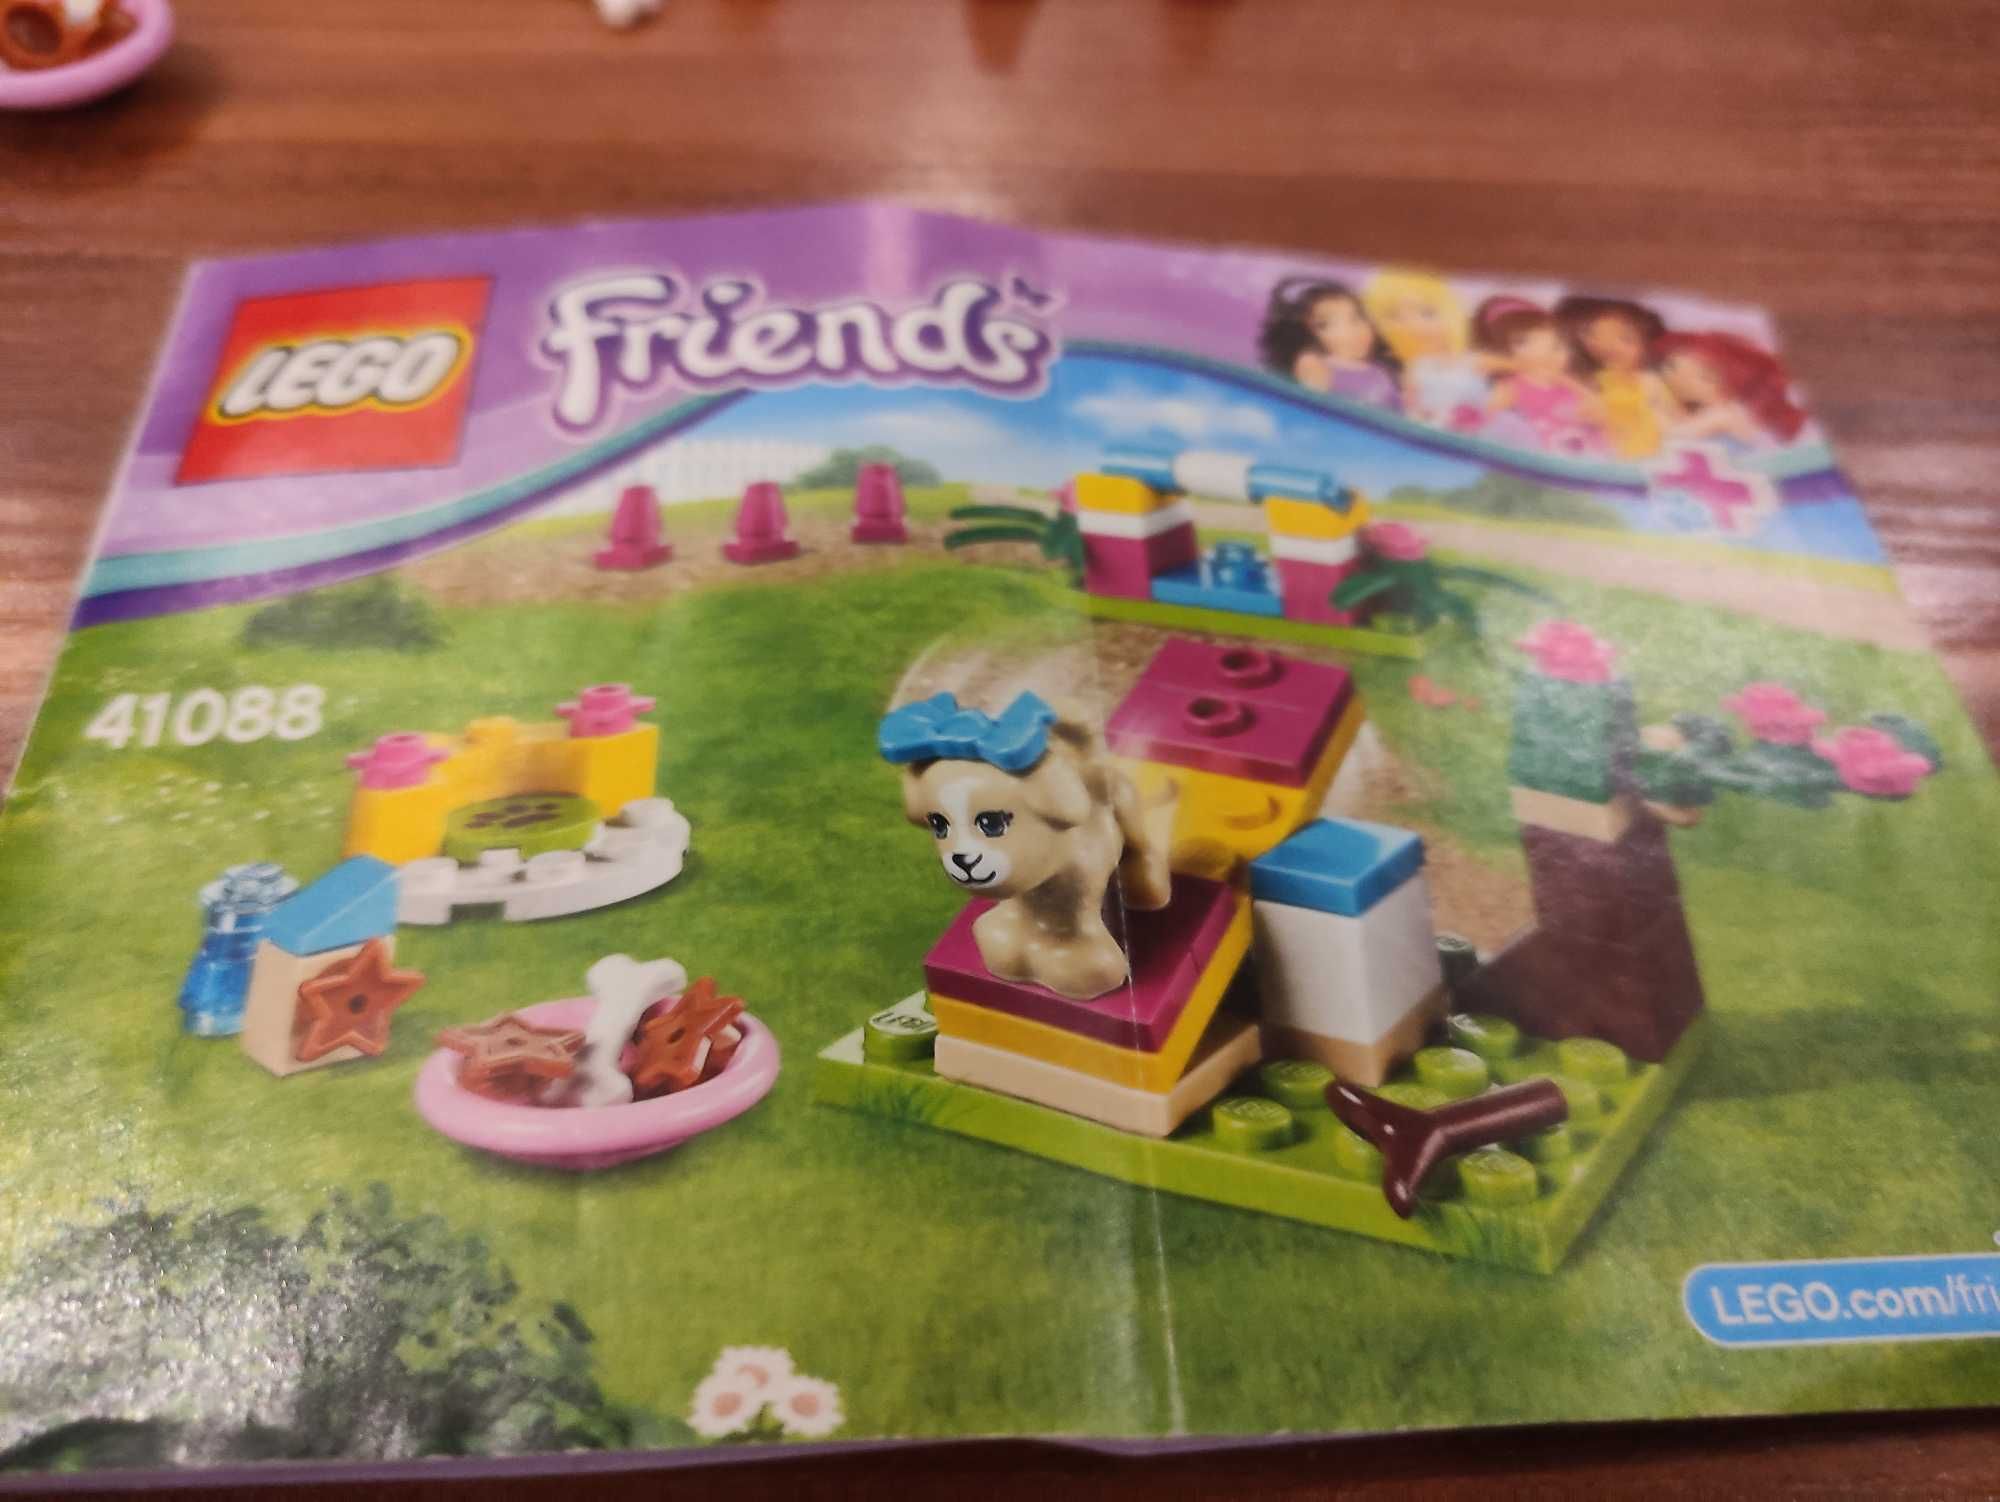 Lego Friends Trening szczeniaczka 41088